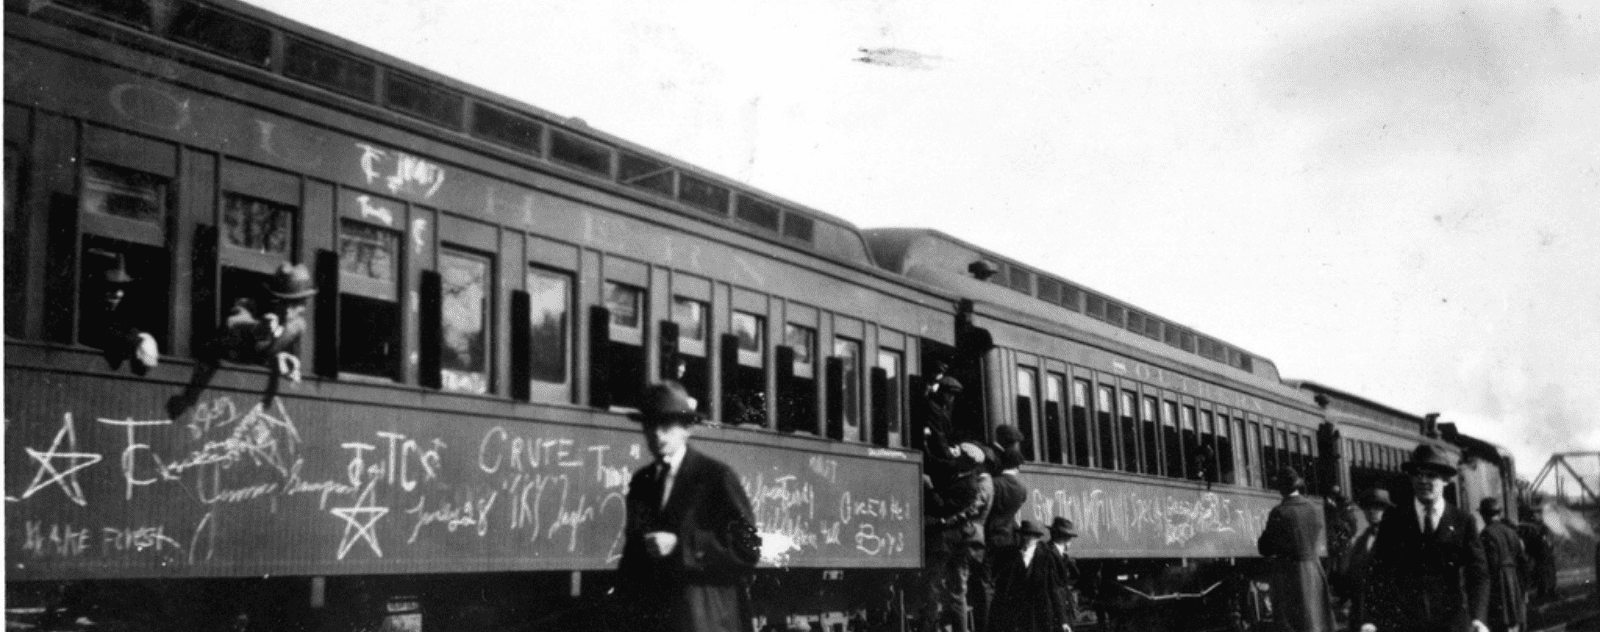 Graffitis sur les wagons dans les années 1920-1930